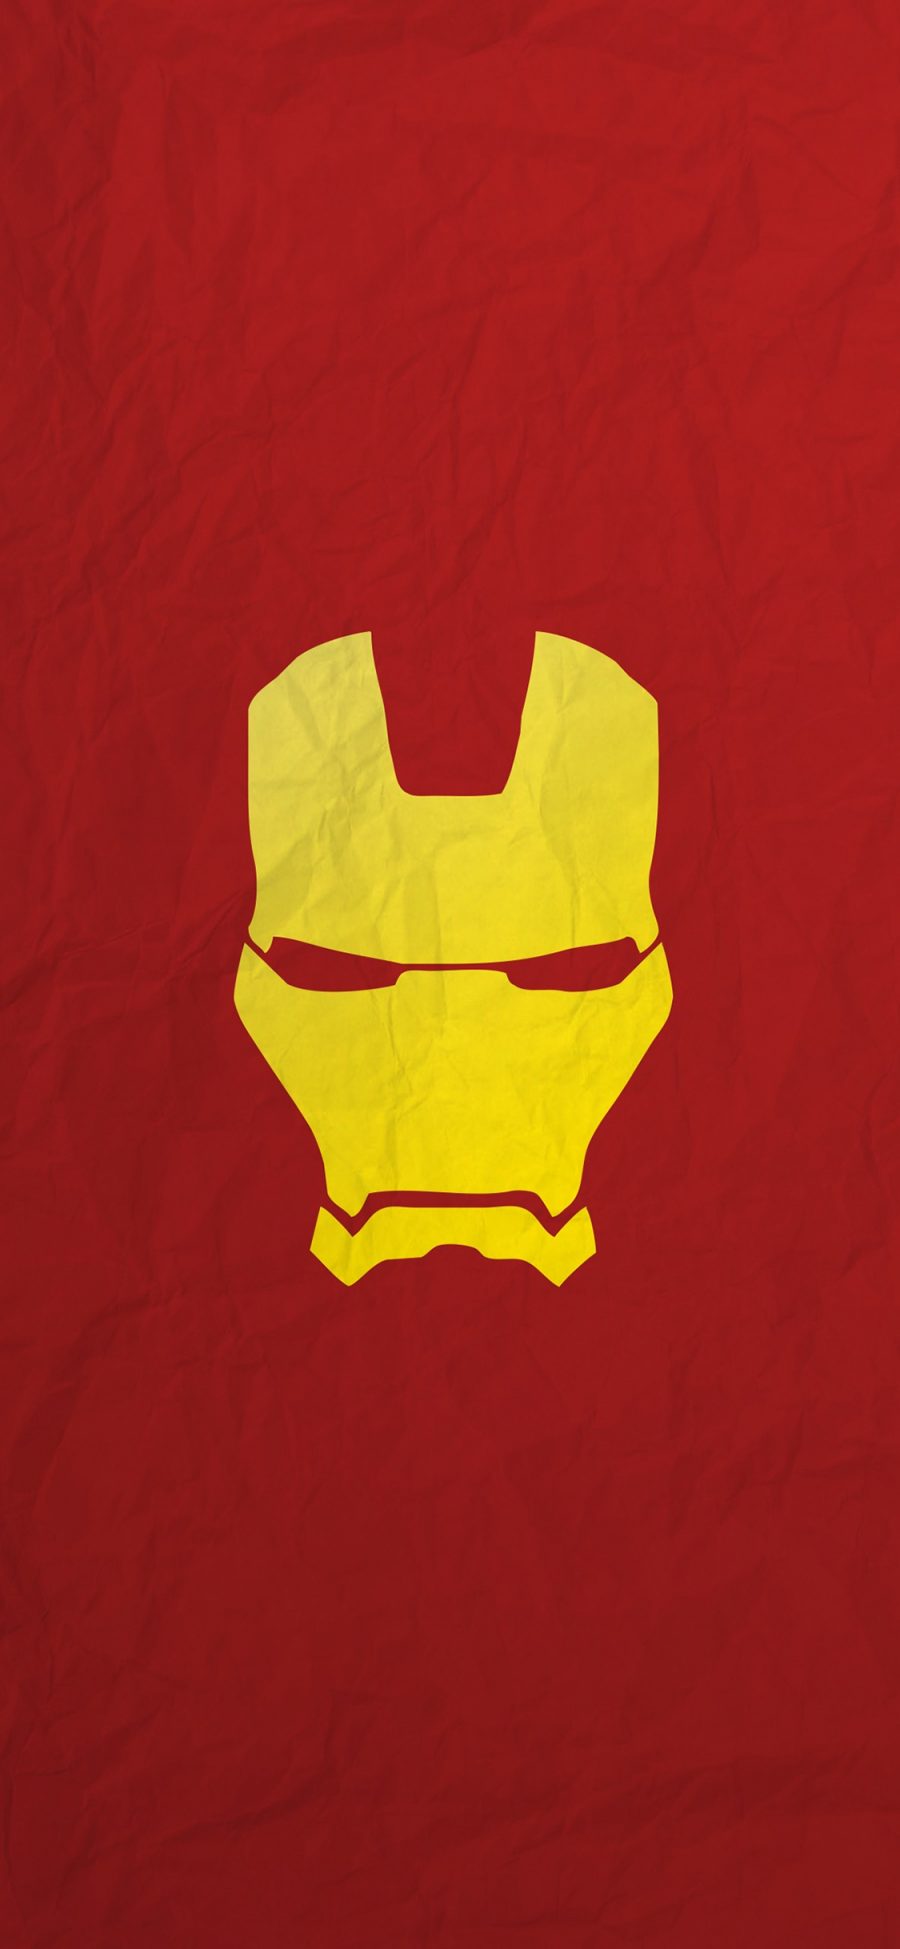 [2436×1125]钢铁侠 面具 红色 超级英雄 漫威 苹果手机动漫壁纸图片